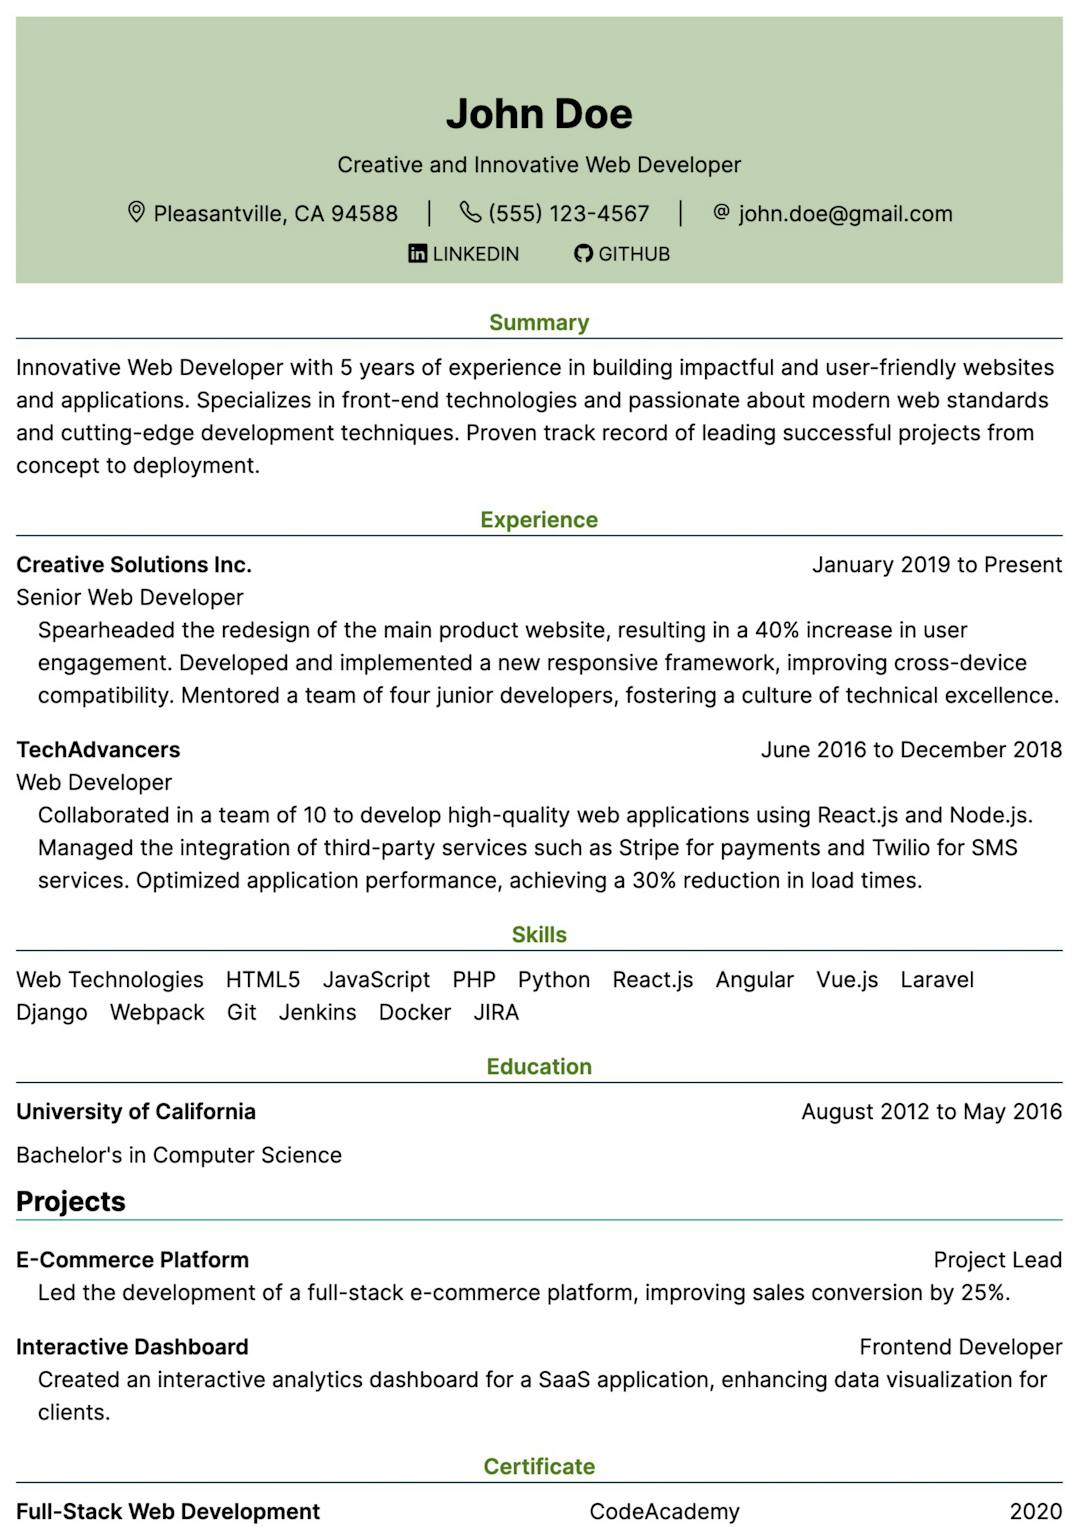 kakuna pdf resume template